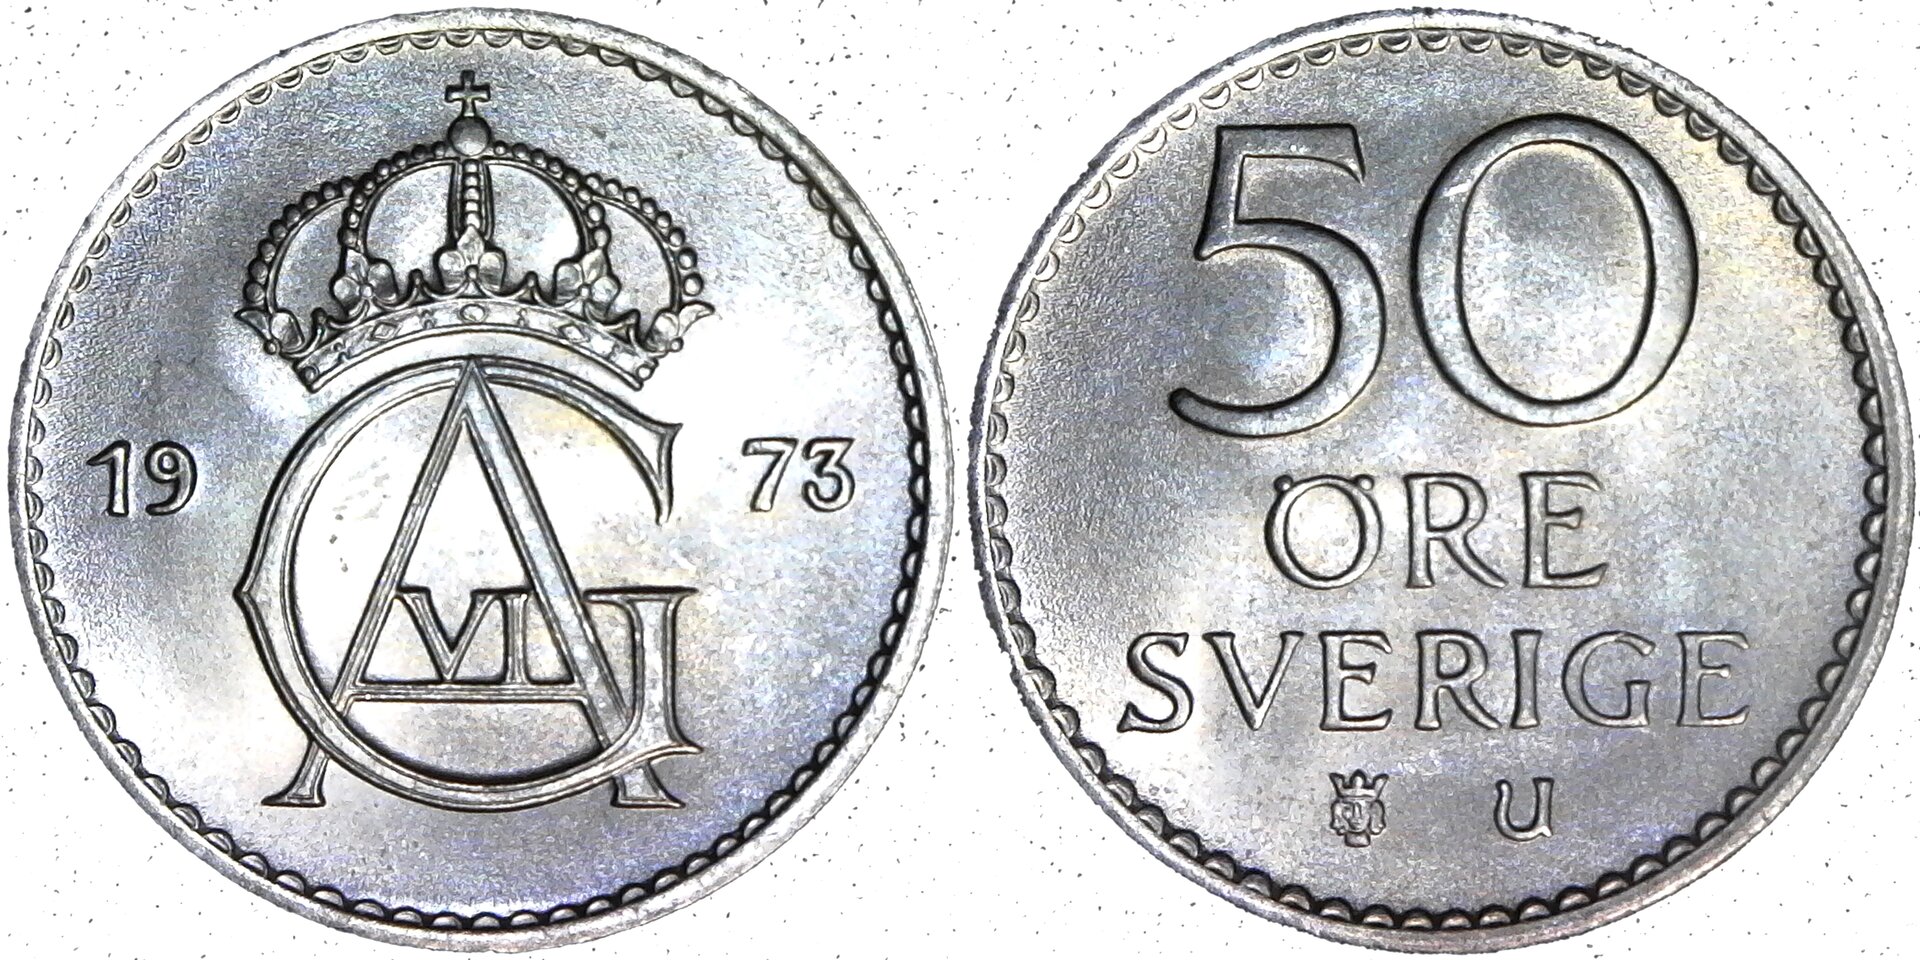 Sweden 50 Ore 1973 rev-side-cutout.jpg